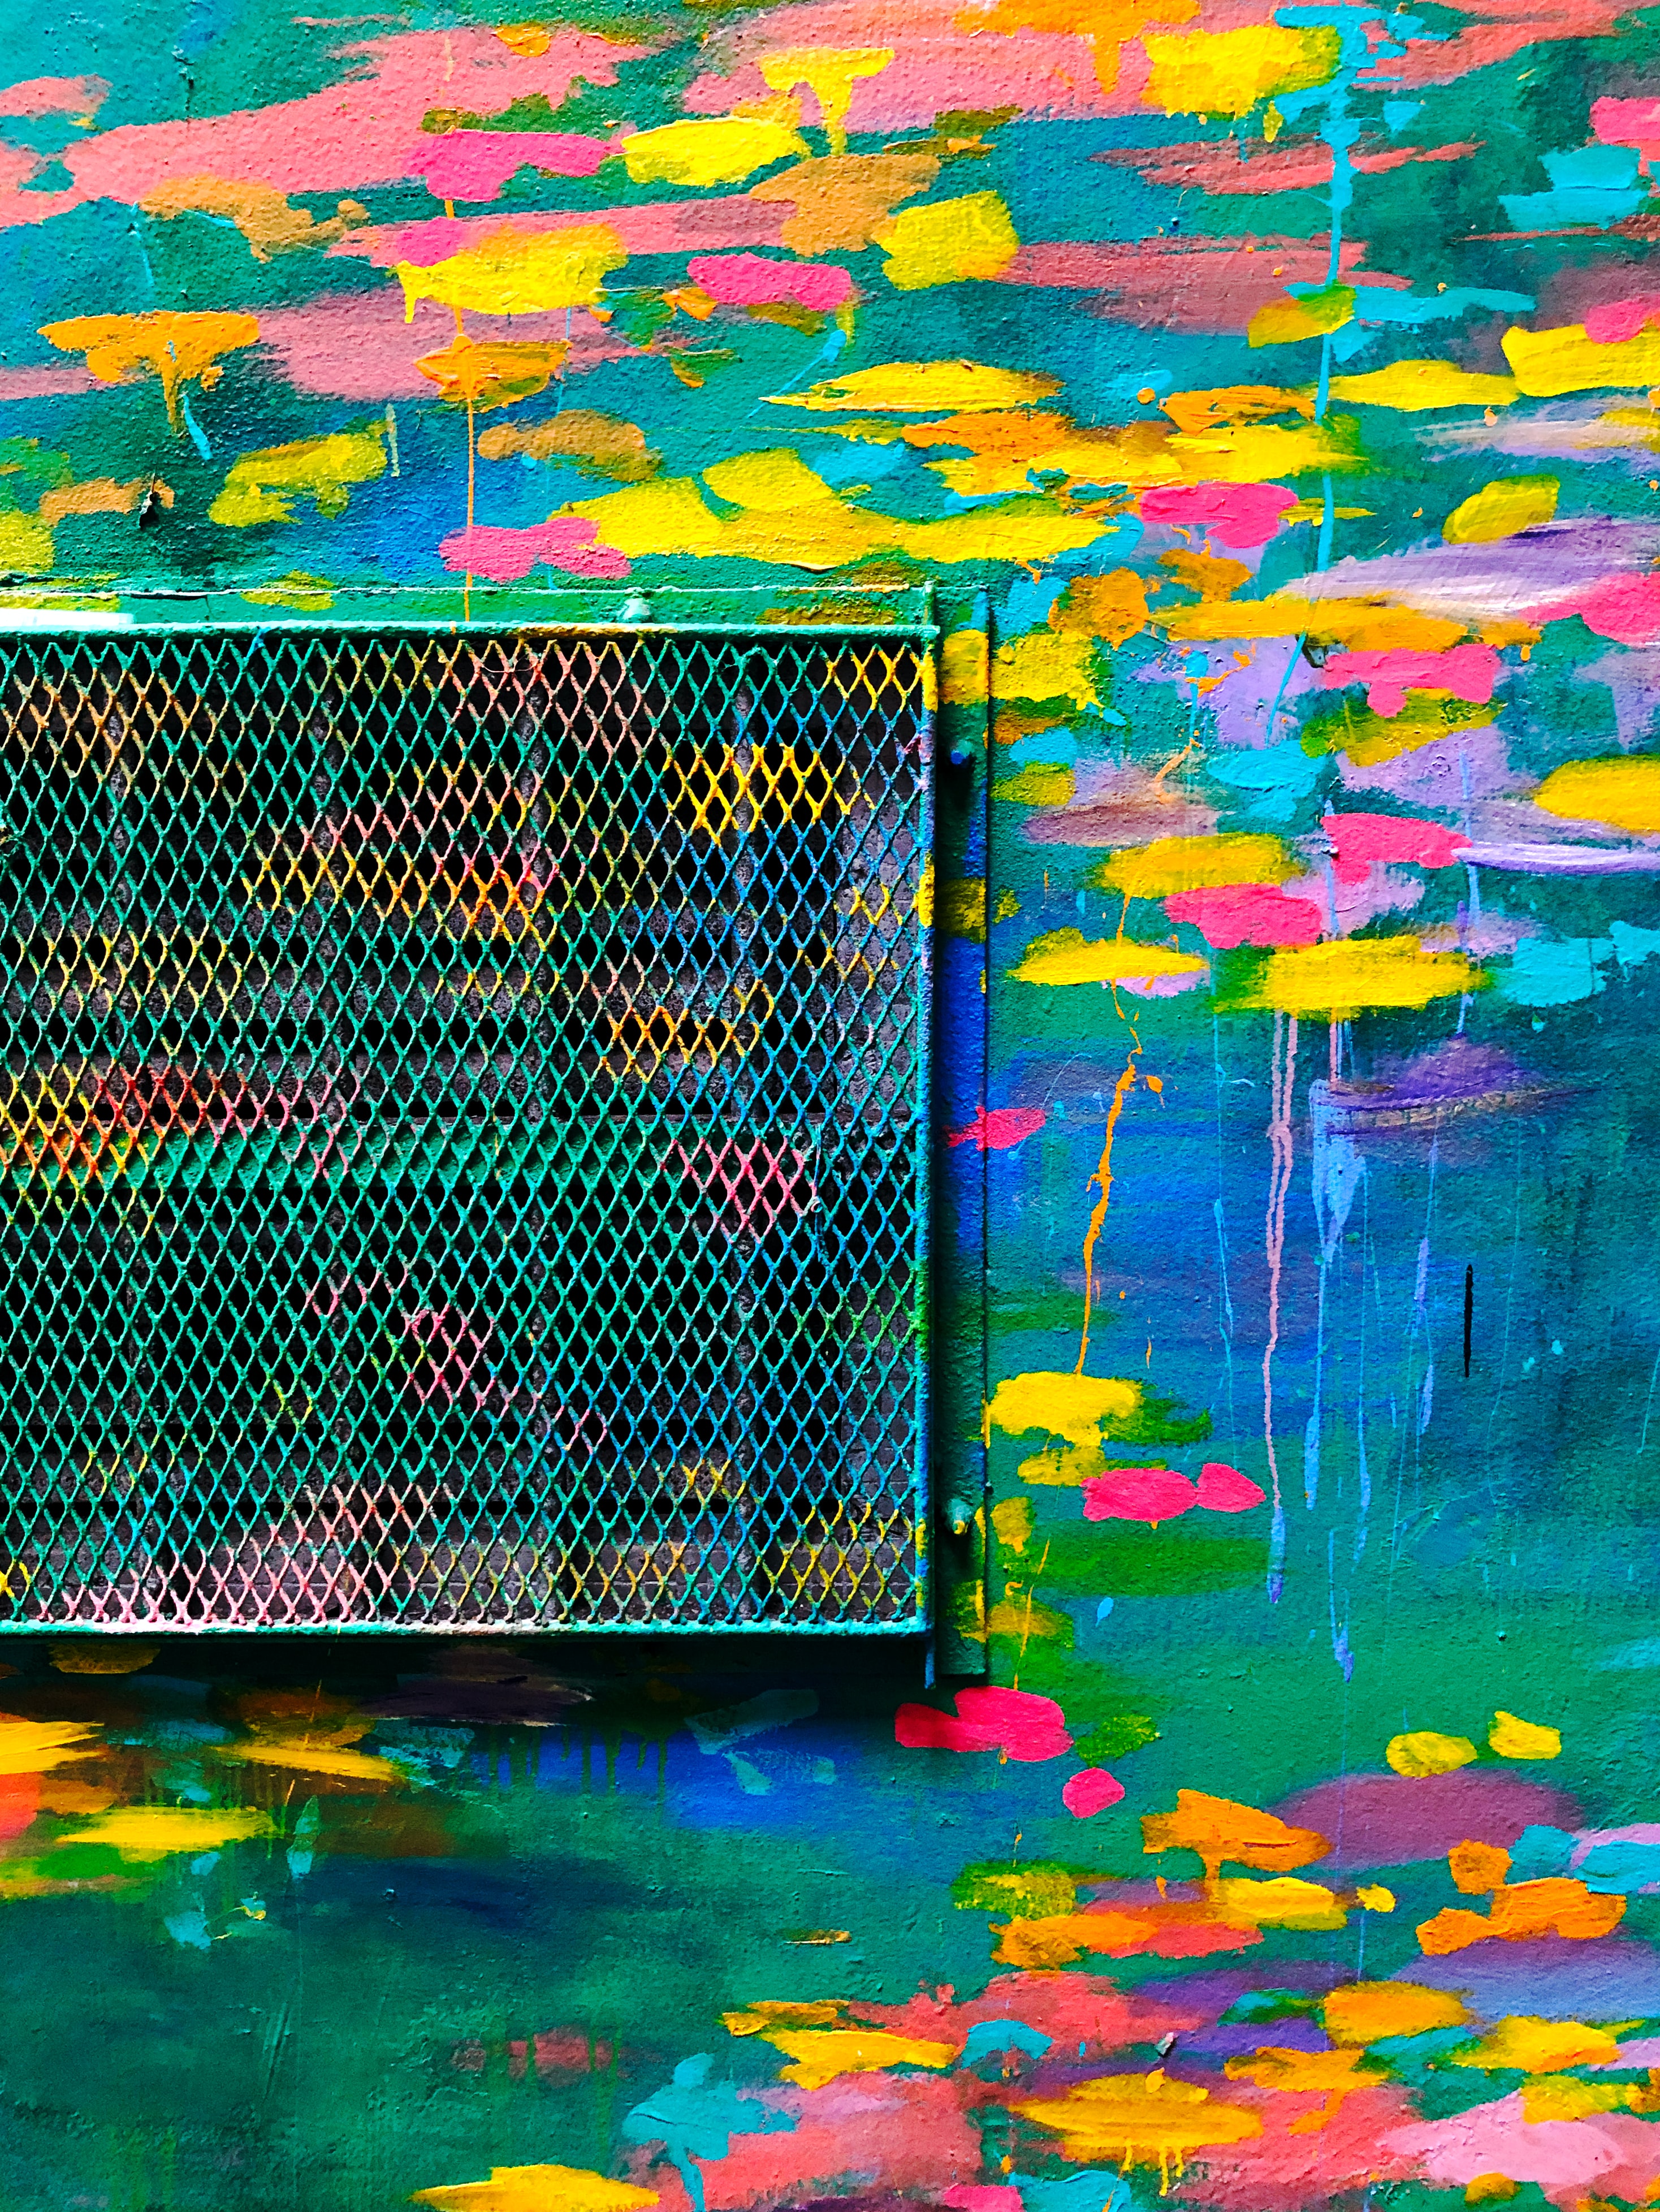 Wall lattice, miscellaneous, paint, multicolored desktop Images